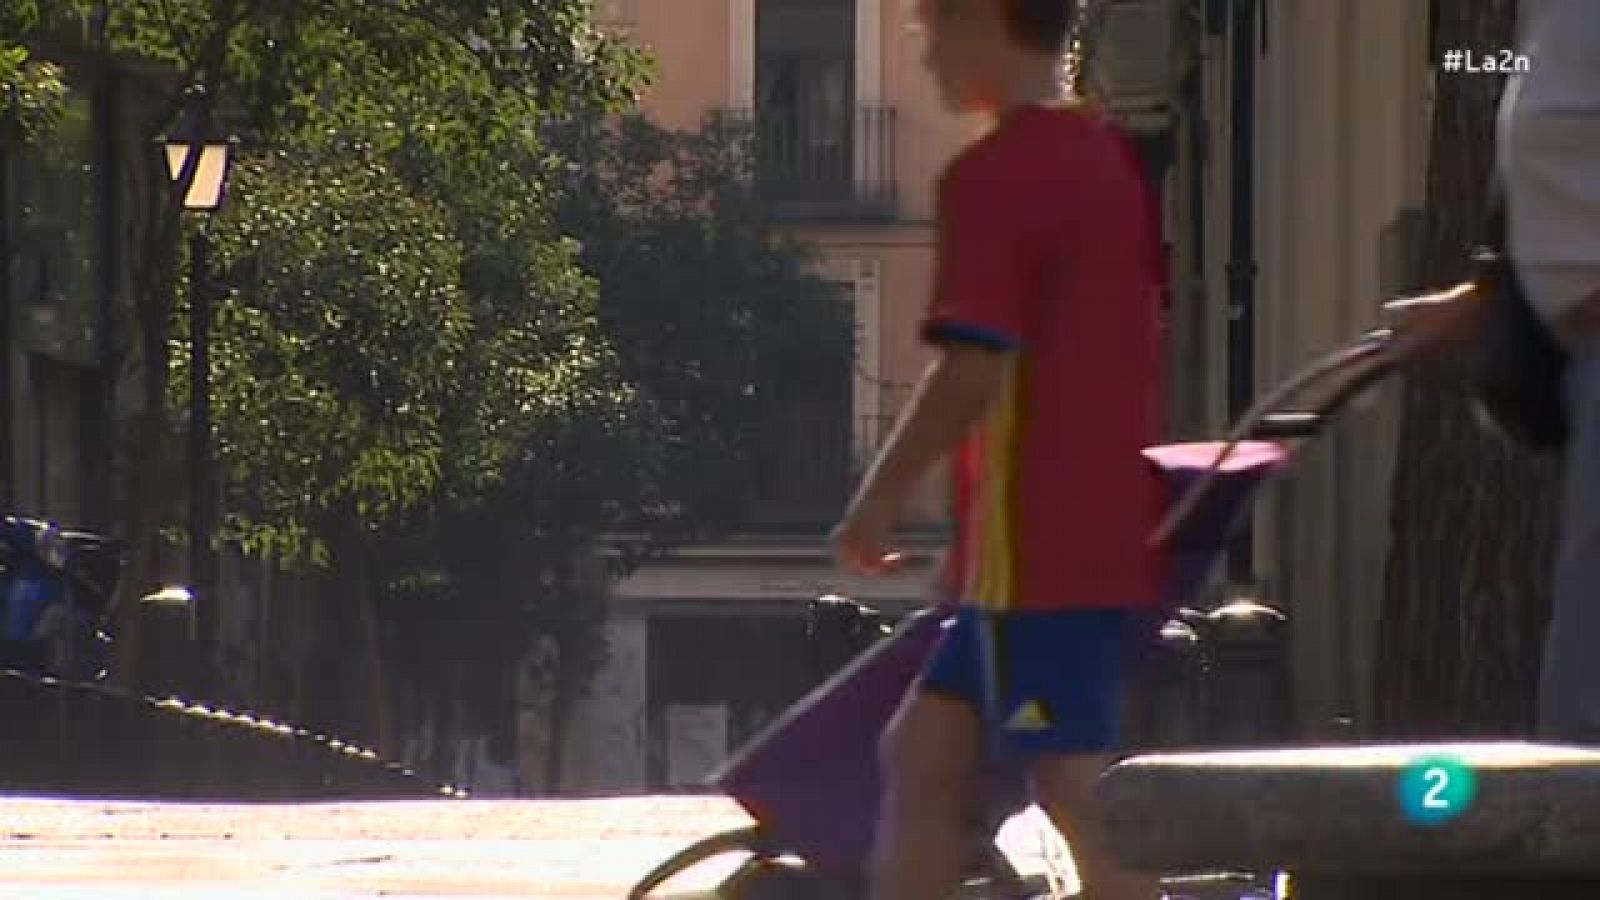 La 2 Noticias - Flâneur, un paseante por Madrid